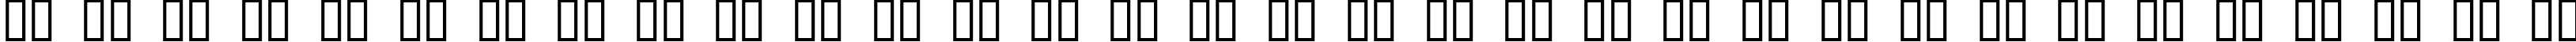 Пример написания русского алфавита шрифтом JI Kaleidoscope Bats 5